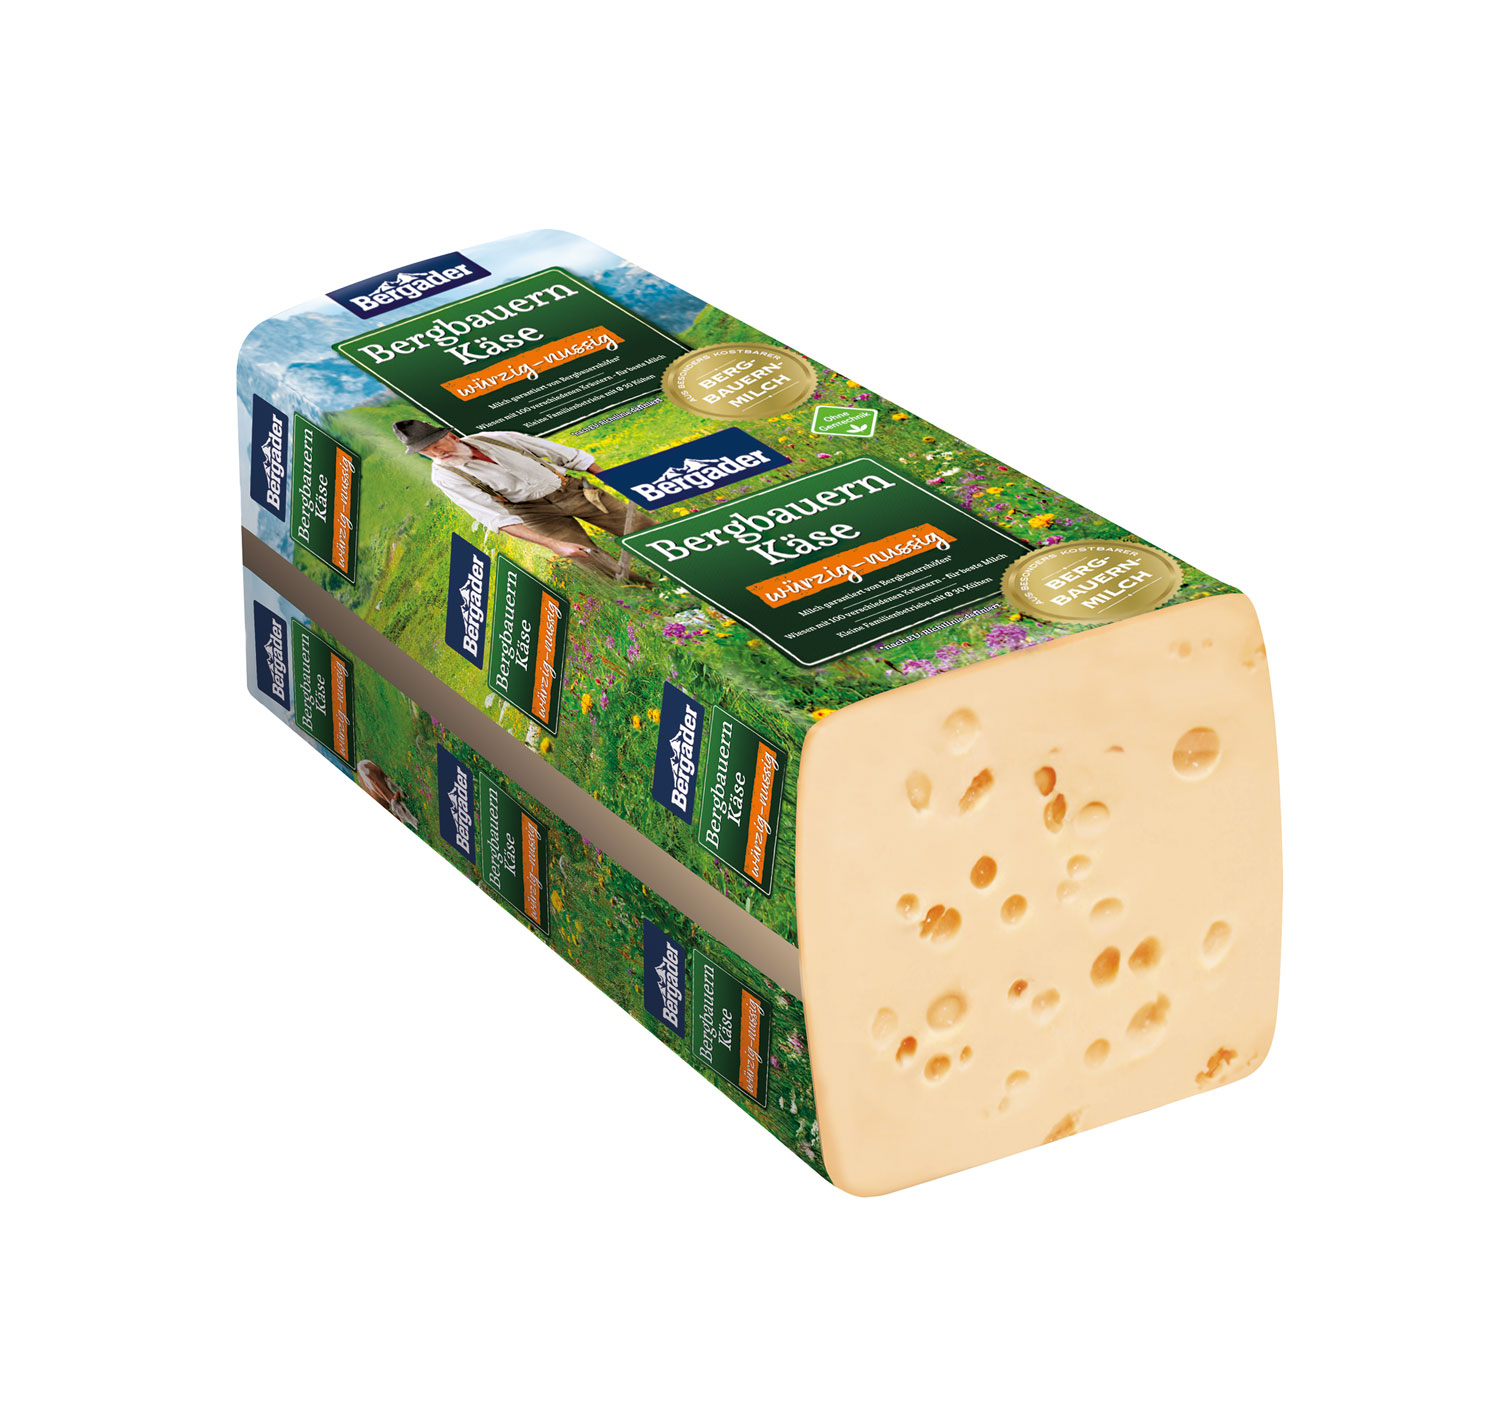 Bergbauern MHD VDMP 05.03. würzig-nussig Käse – ca. 2800g